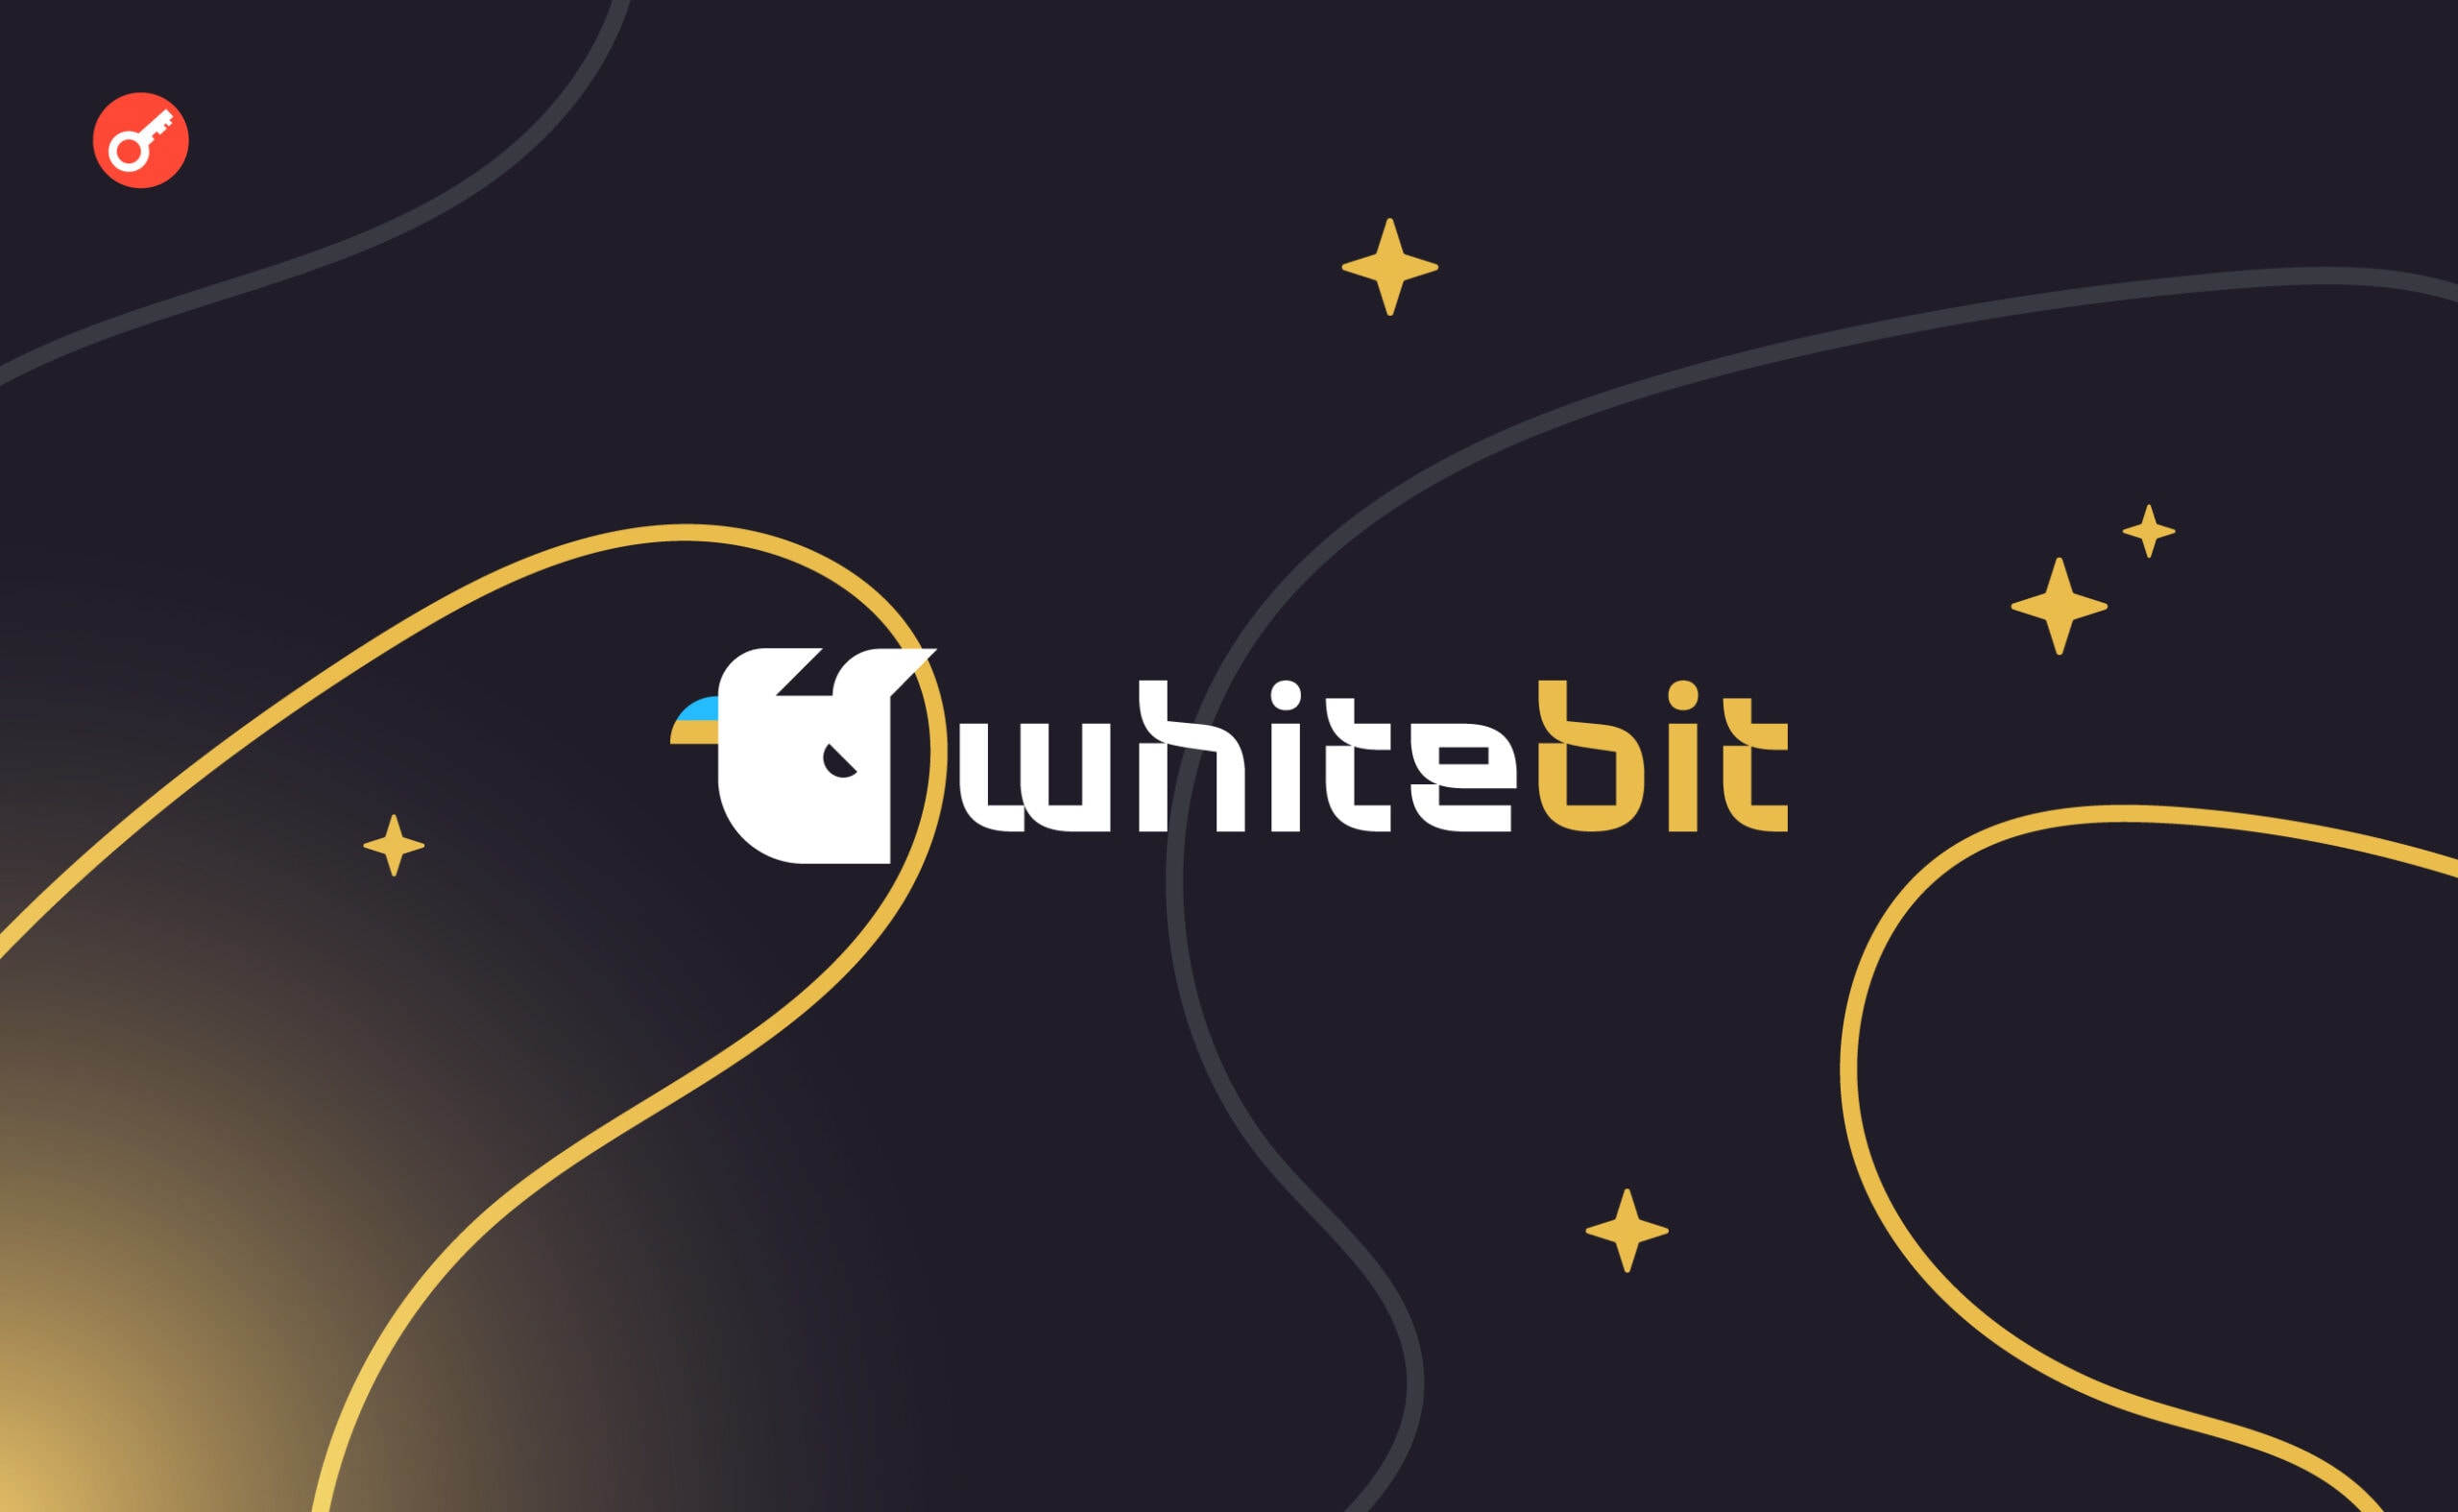 WhiteBIT провела масштабне оновлення і збільшила швидкість торгового ядра в 10 разів. Головний колаж новини.